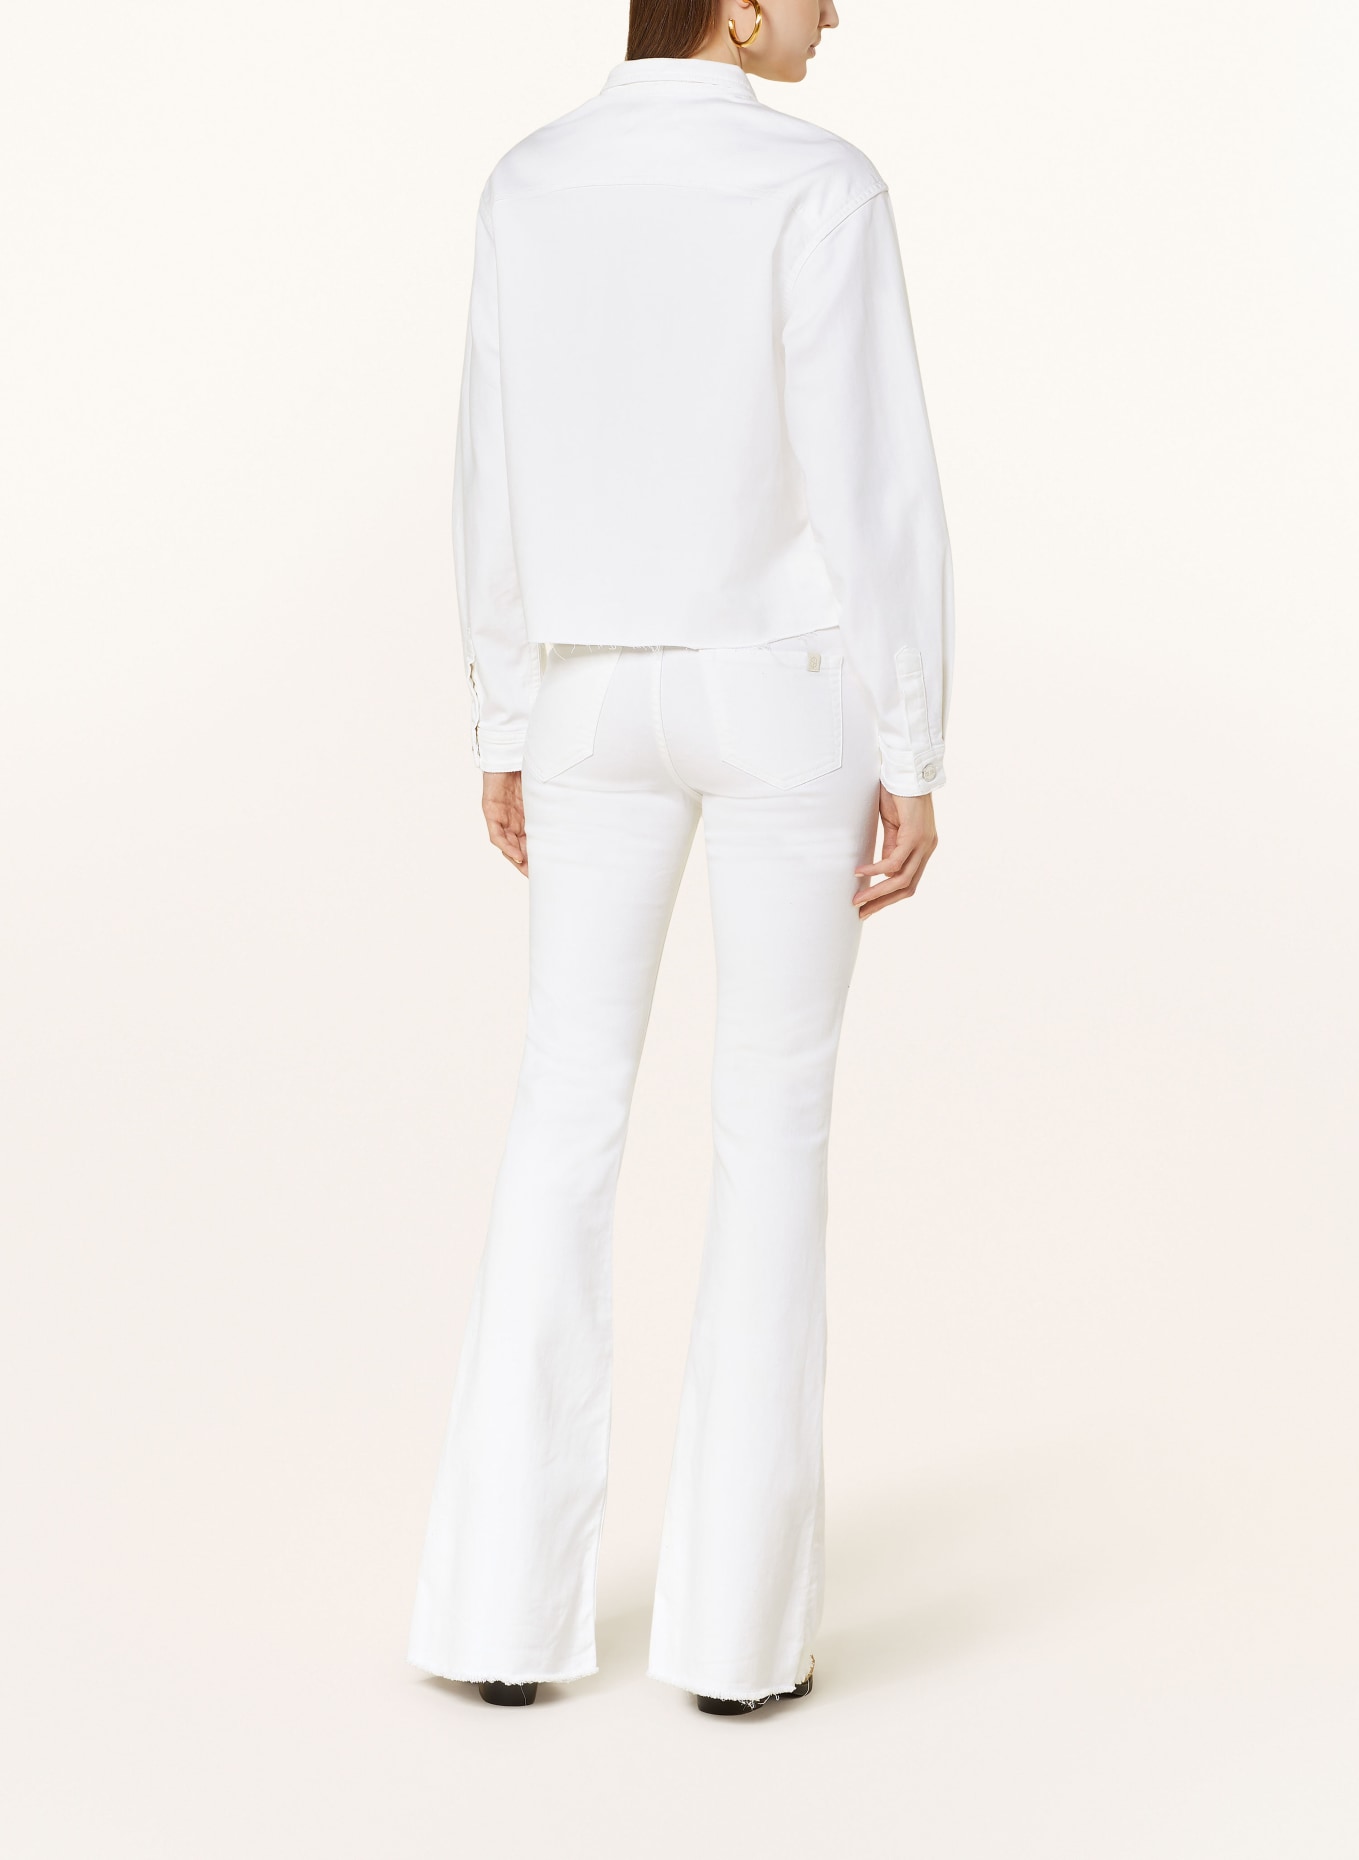 THE.NIM STANDARD Denim jacket, Color: WHITE (Image 3)